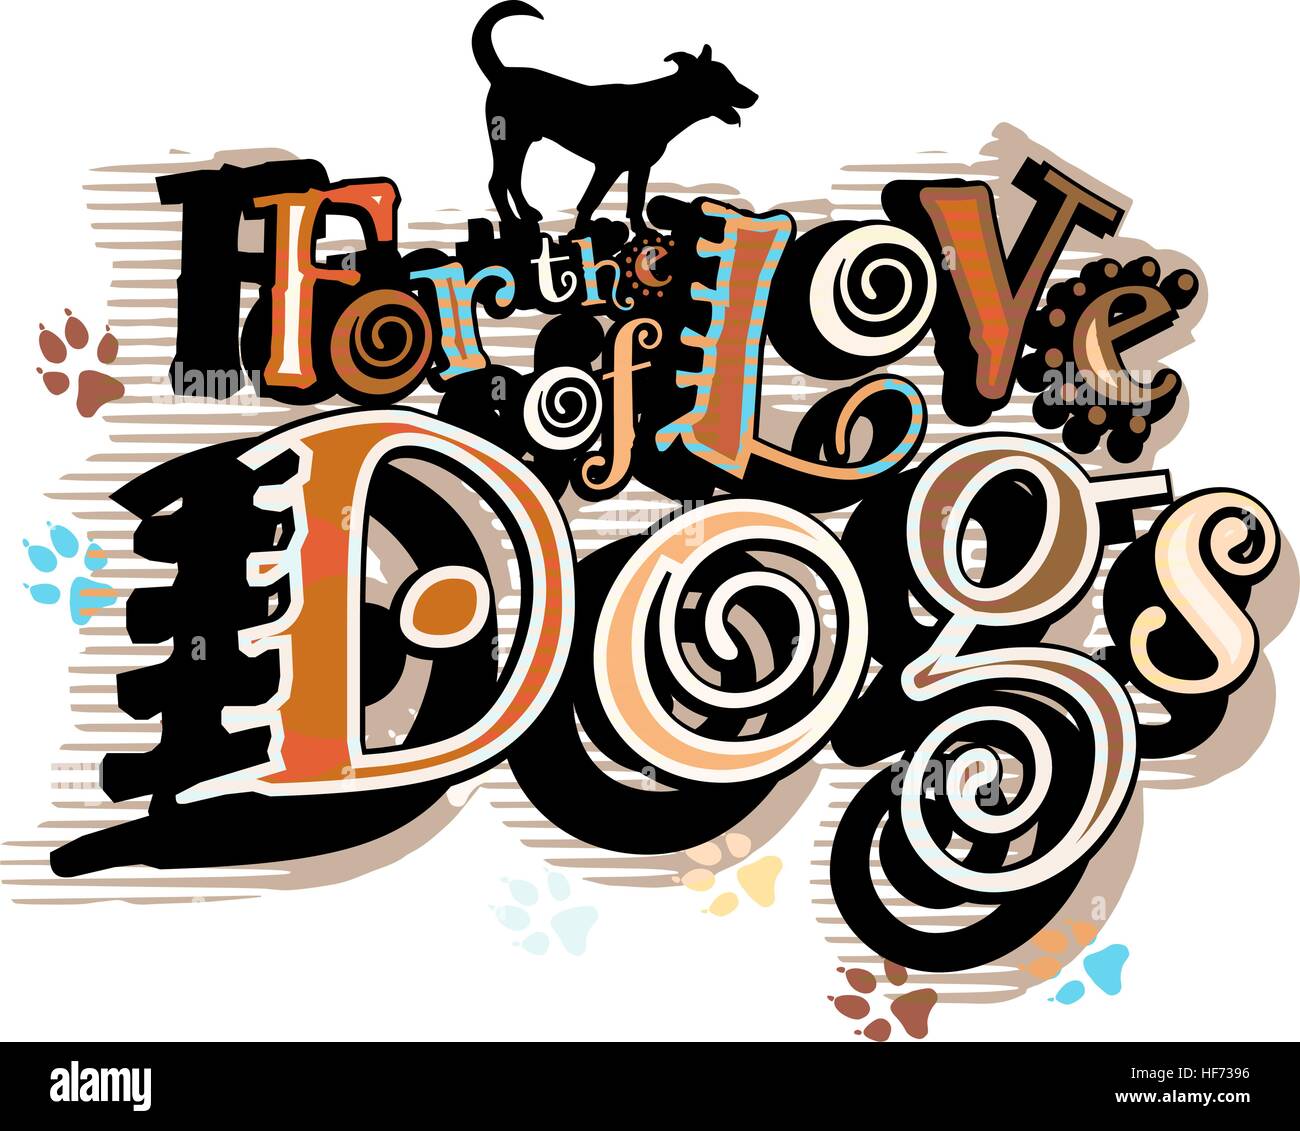 Illustrazione vettoriale di un cane che ama slogan Illustrazione Vettoriale